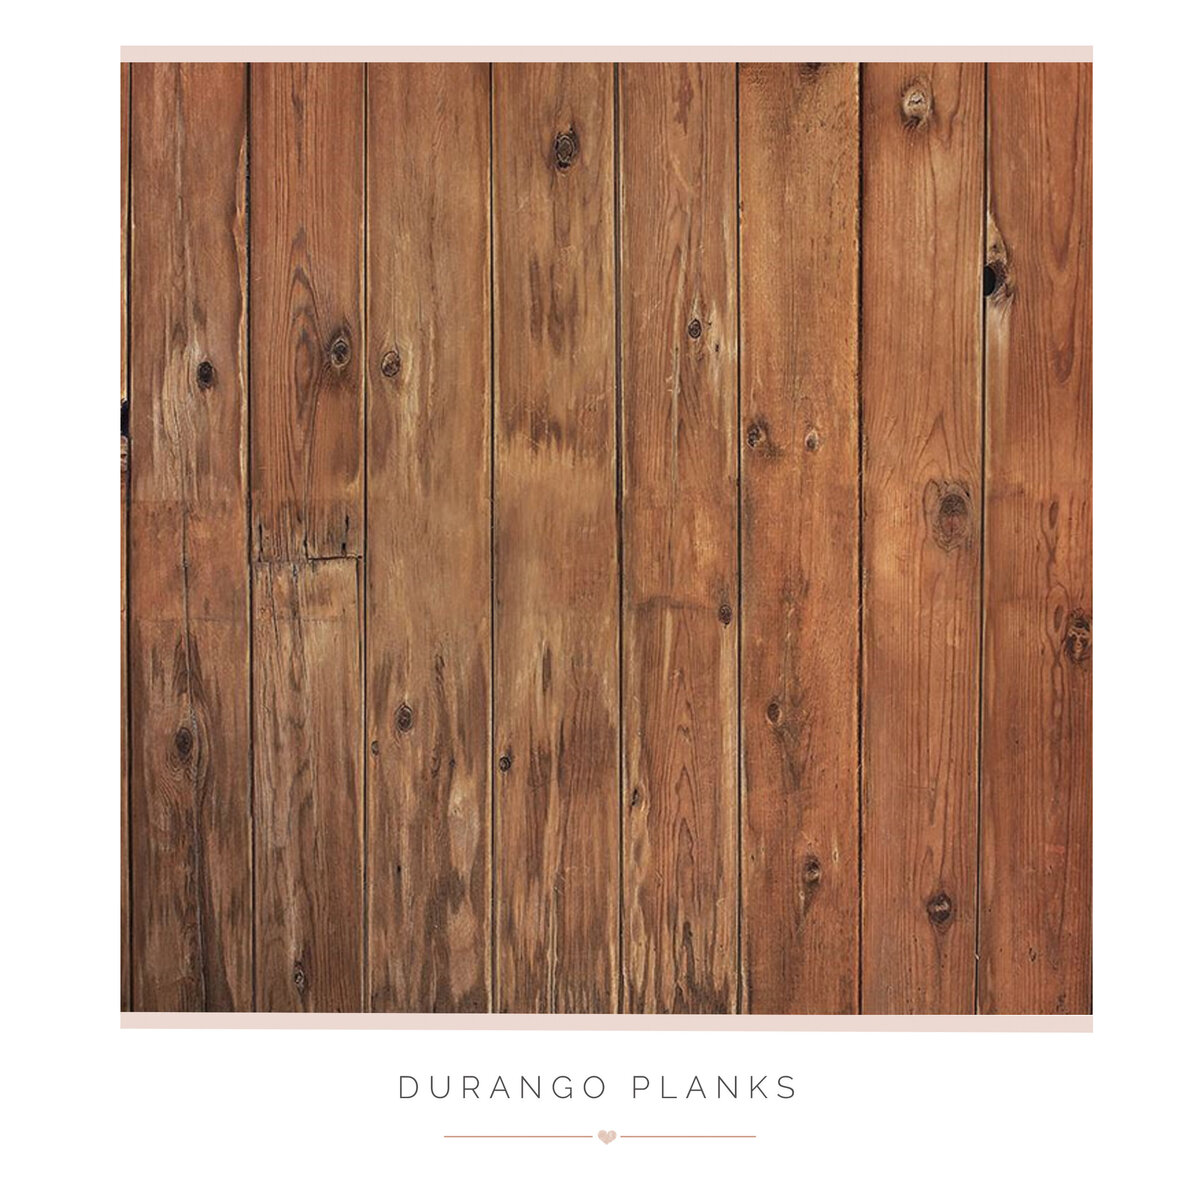 Durango Planks